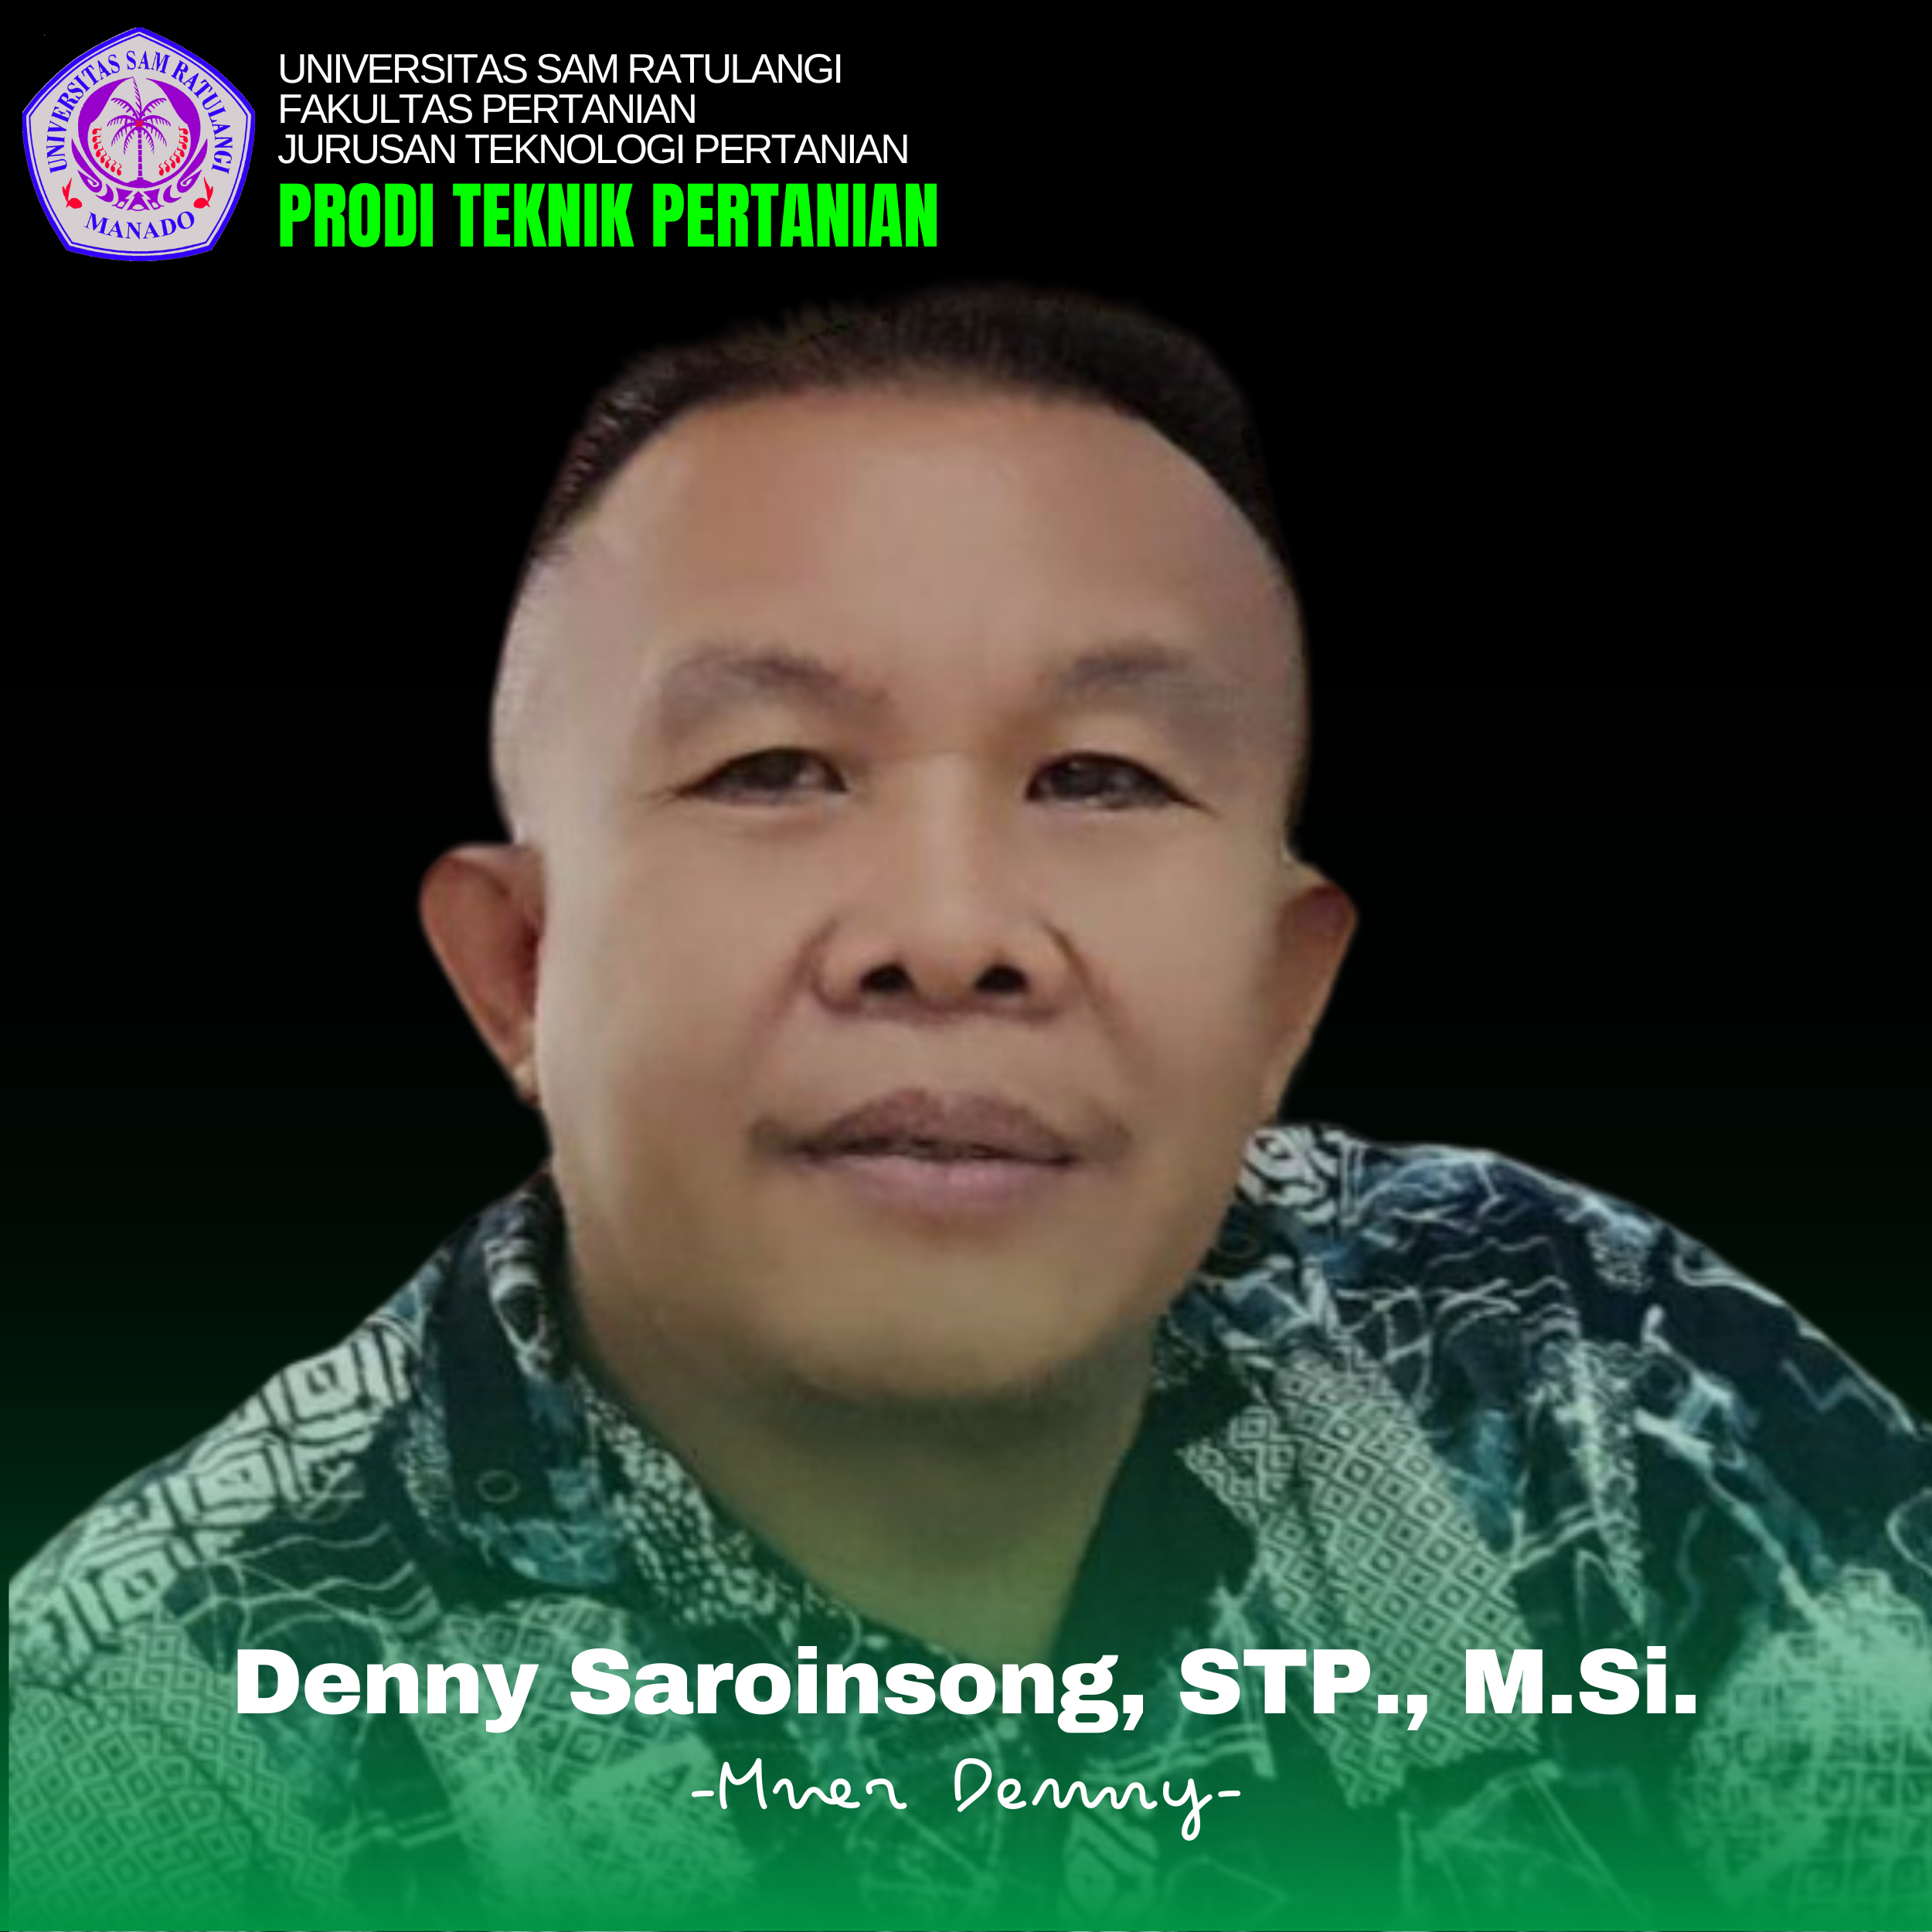 Denny Saroinsong, S.TP., M.Si